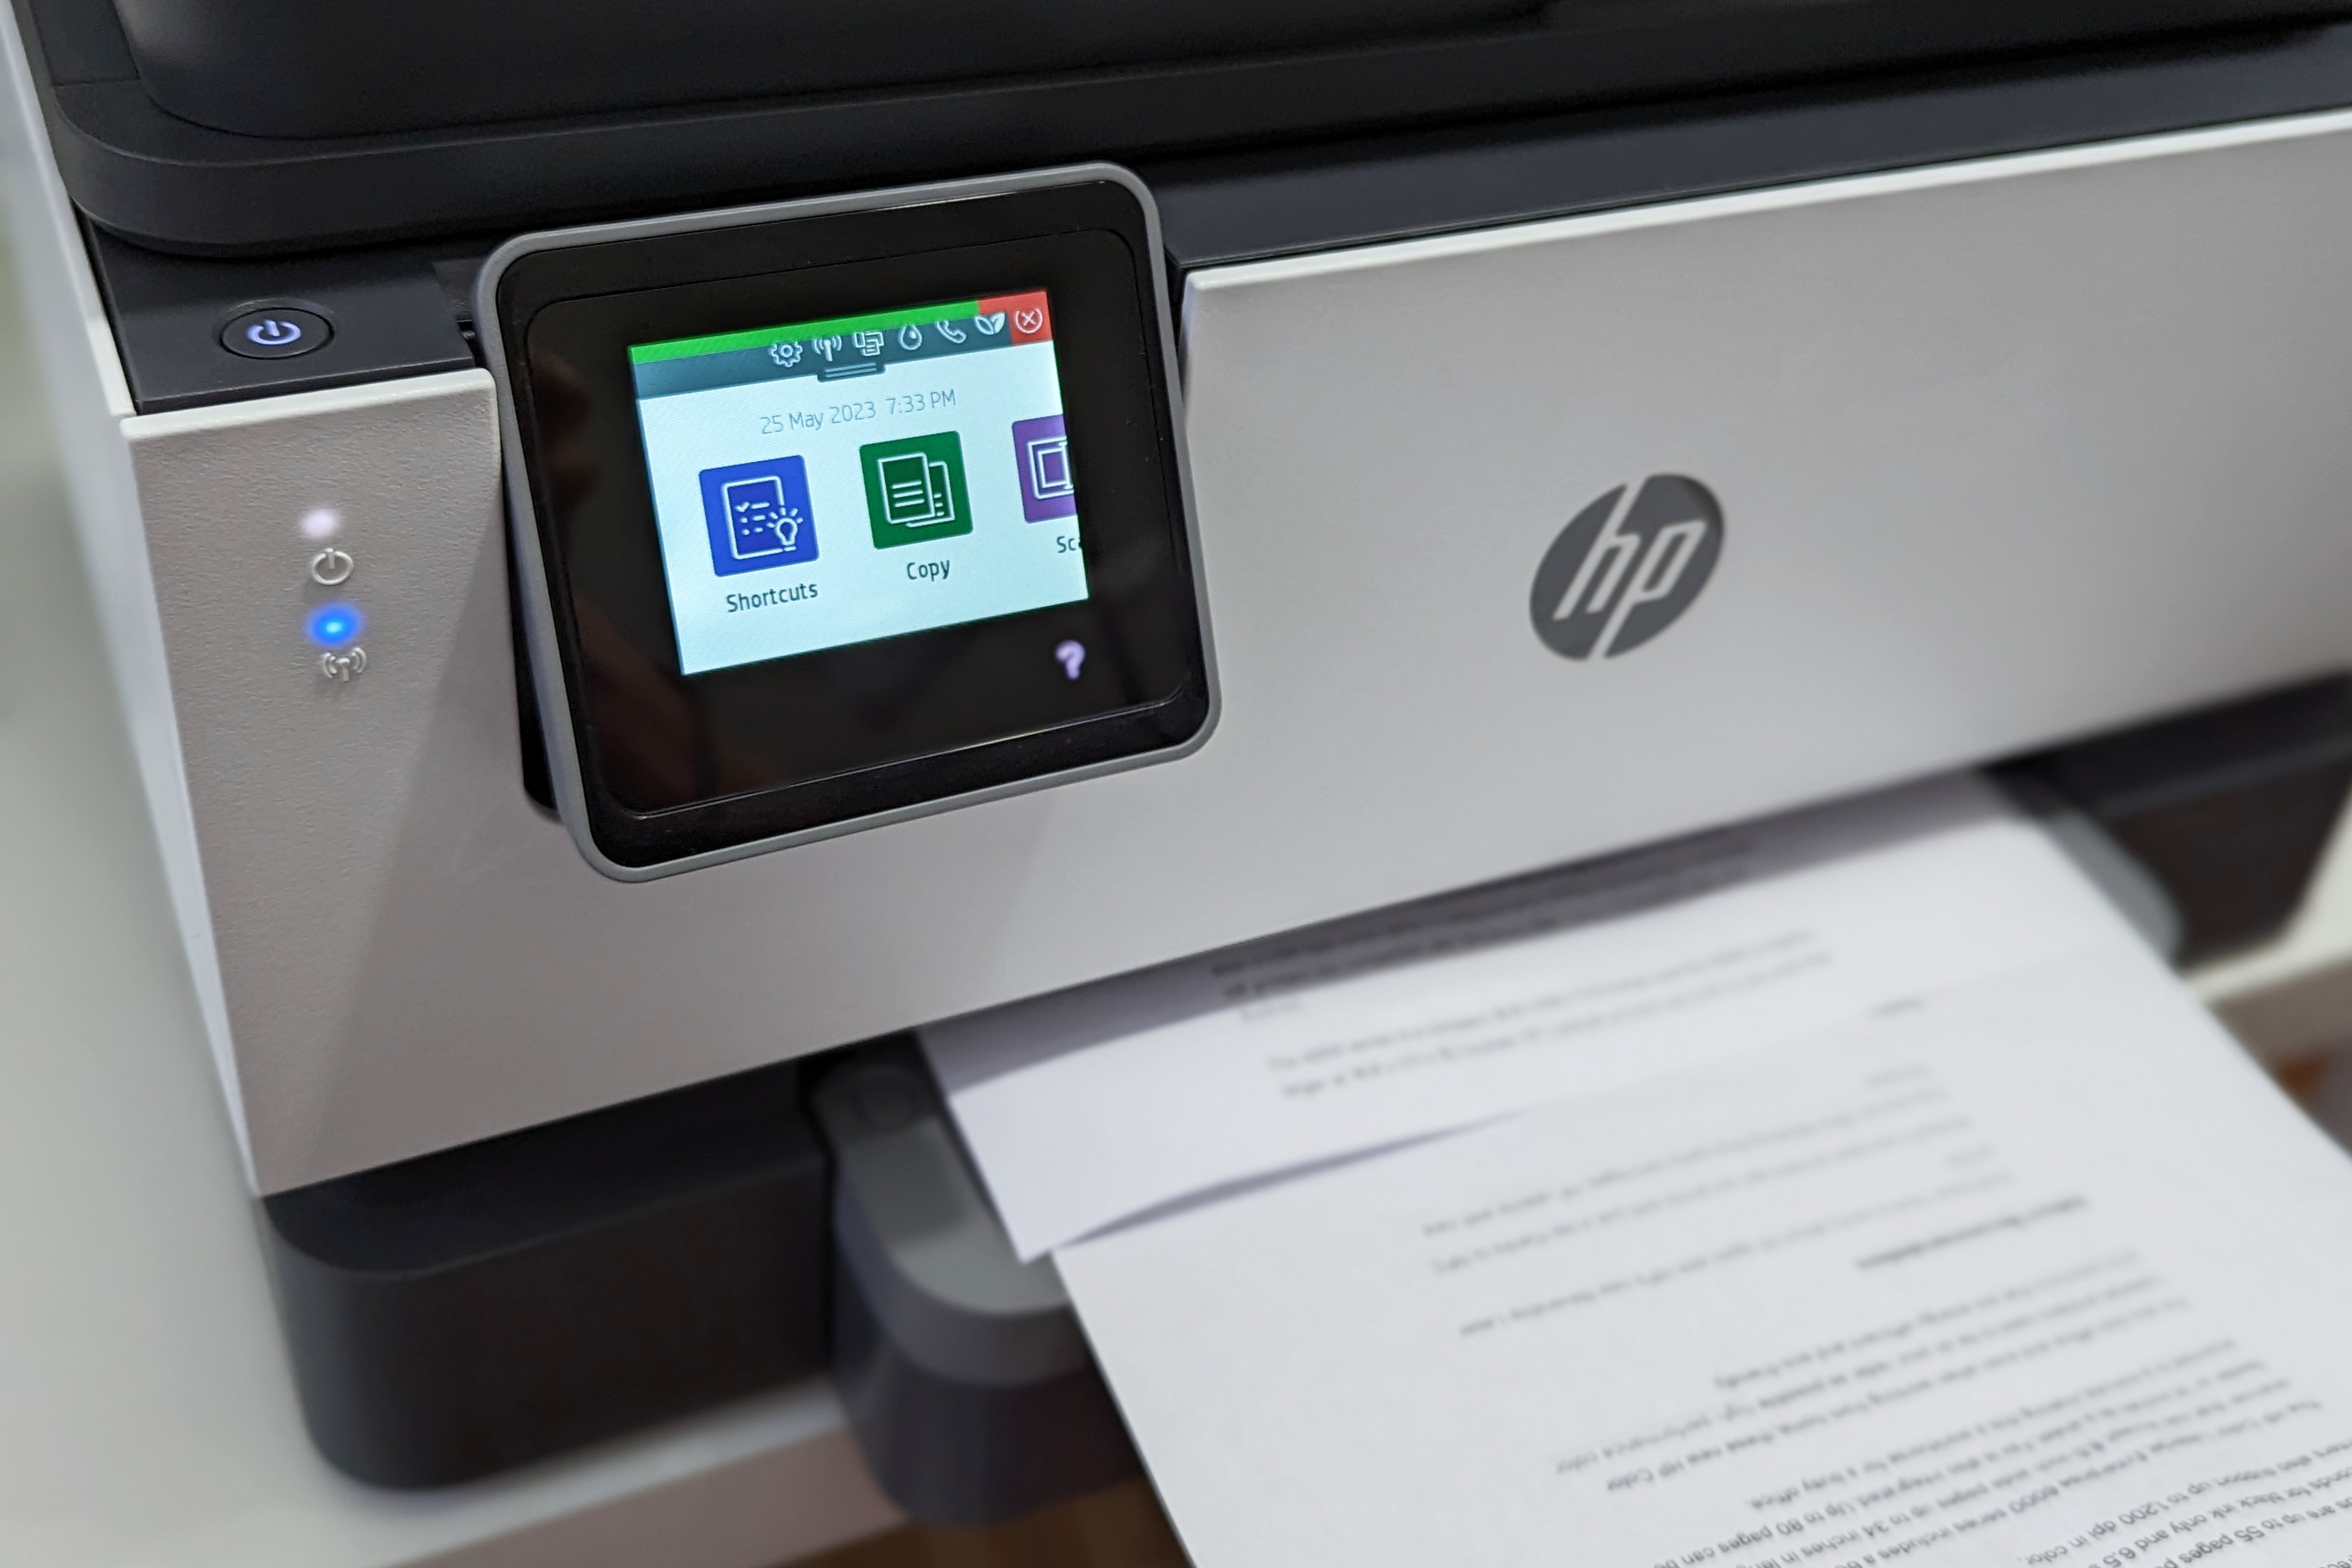 As cópias podem ser feitas diretamente do HP OfficeJet Pro 9015e usando a tela sensível ao toque.